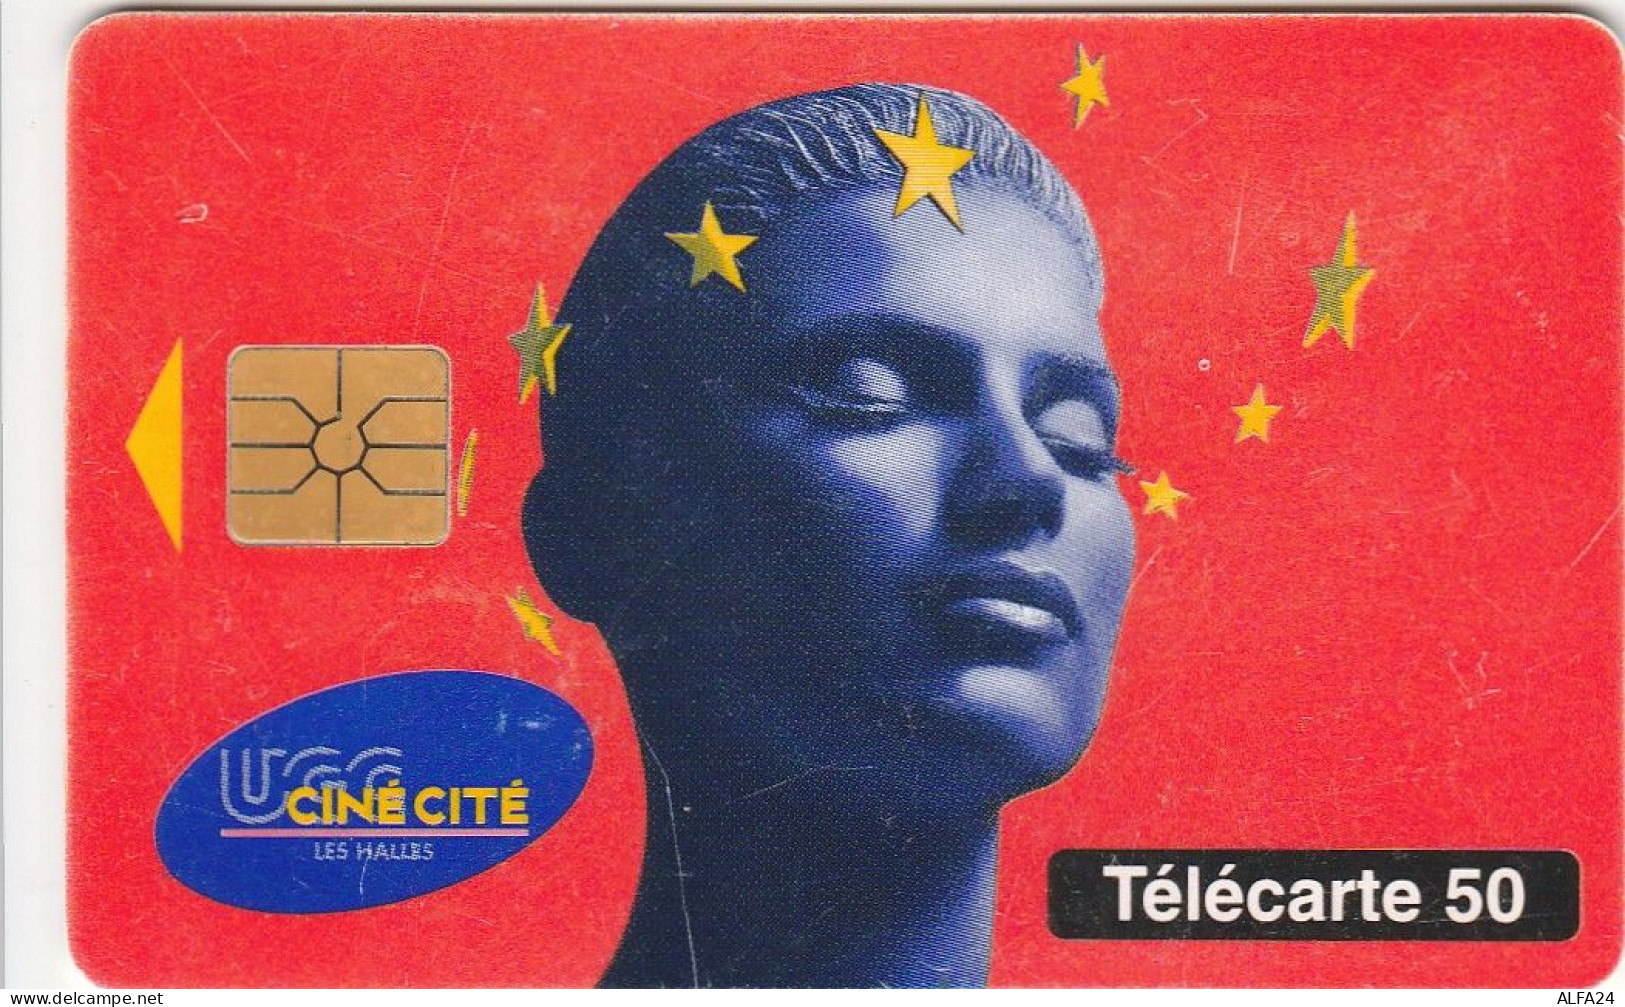 TELECARTE F579 UGC CINECITE - 1995